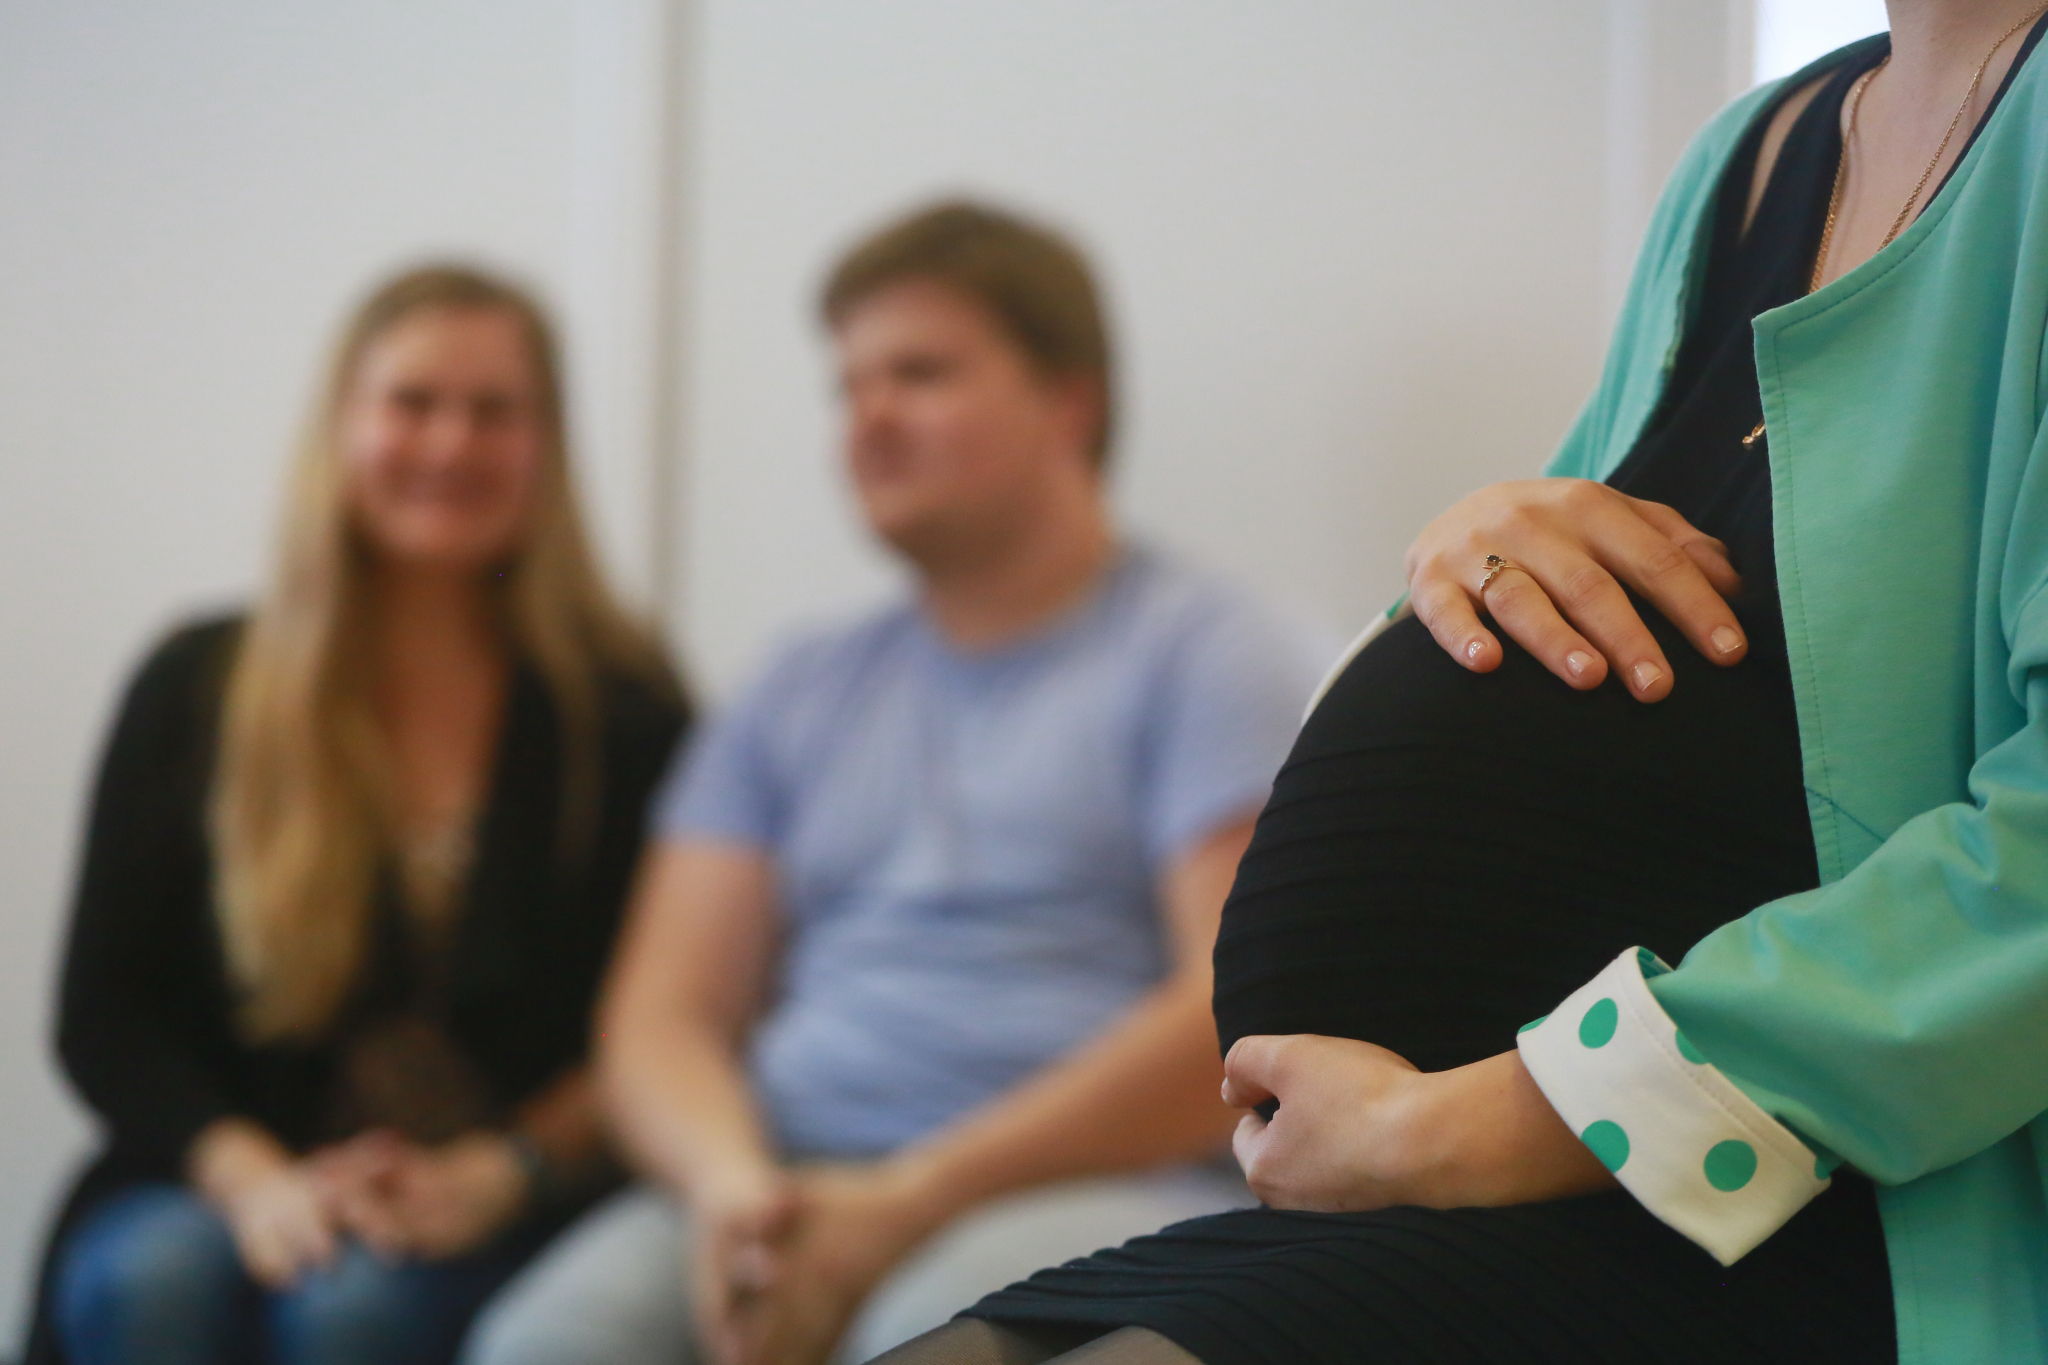 Беременность и роды для женщин в Марий Эл станут комфортнее